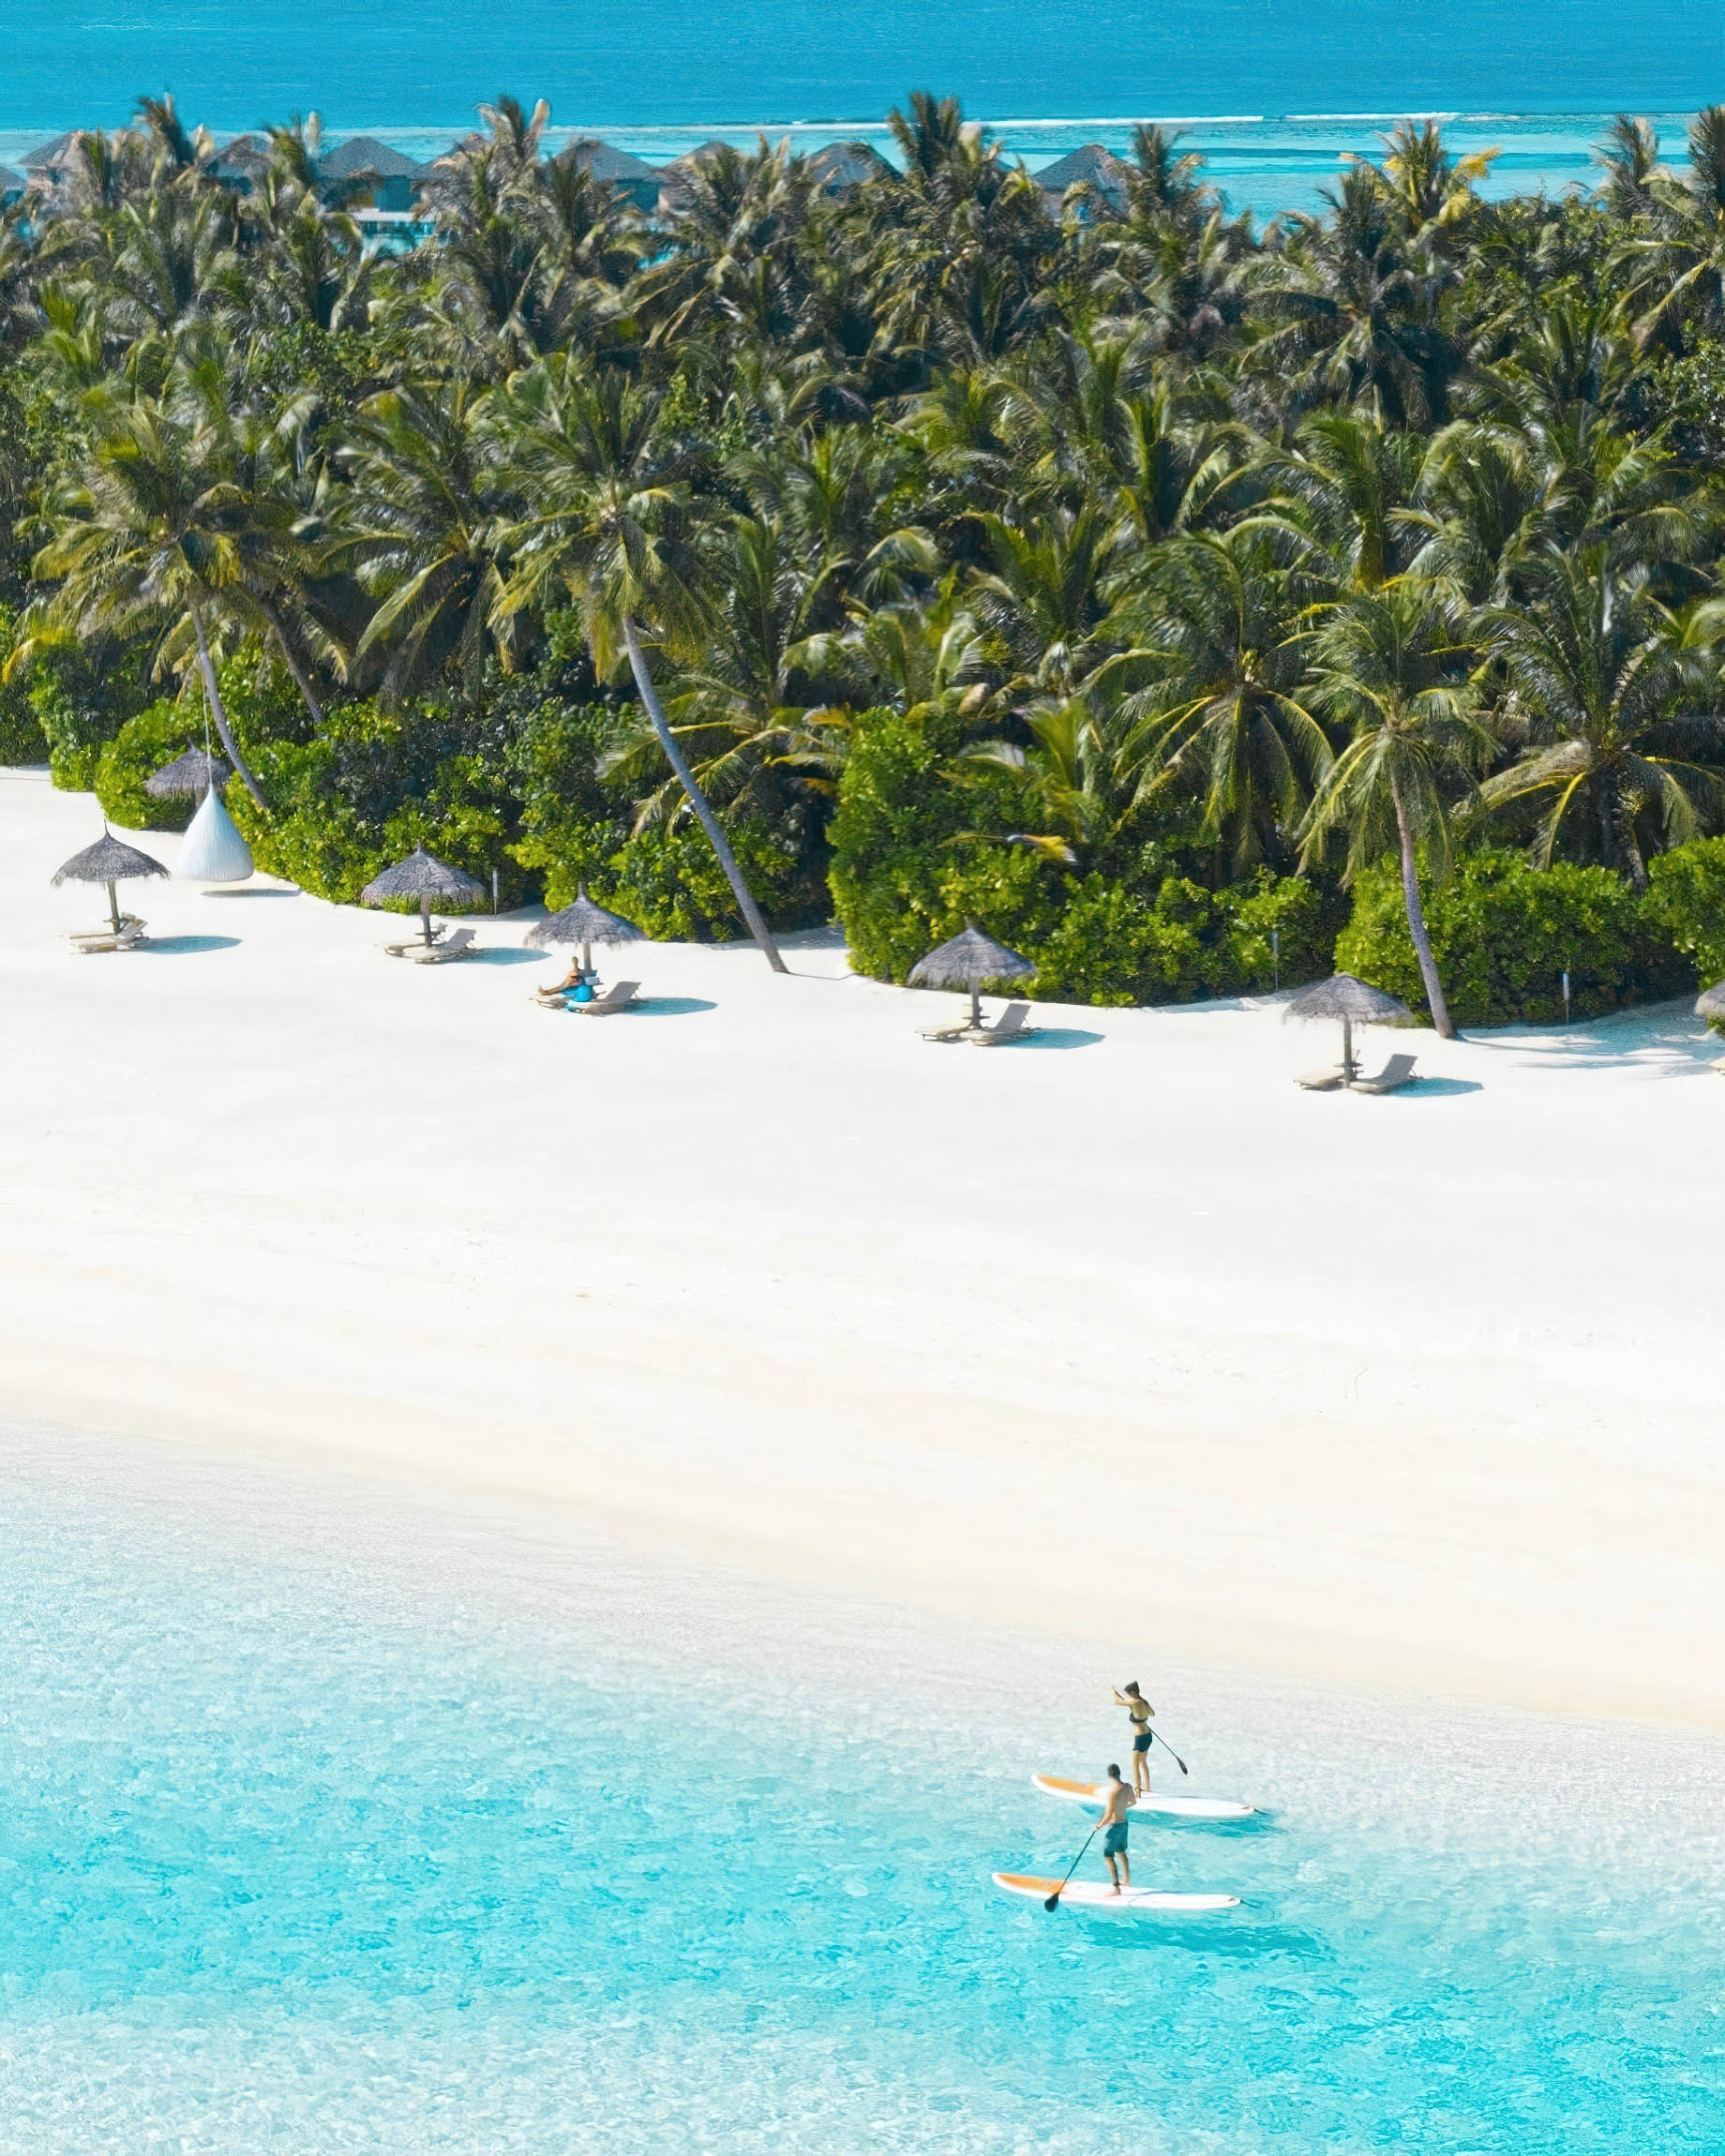 Anantara Thigu Maldives Resort – South Male Atoll, Maldives – Paddle Boarding